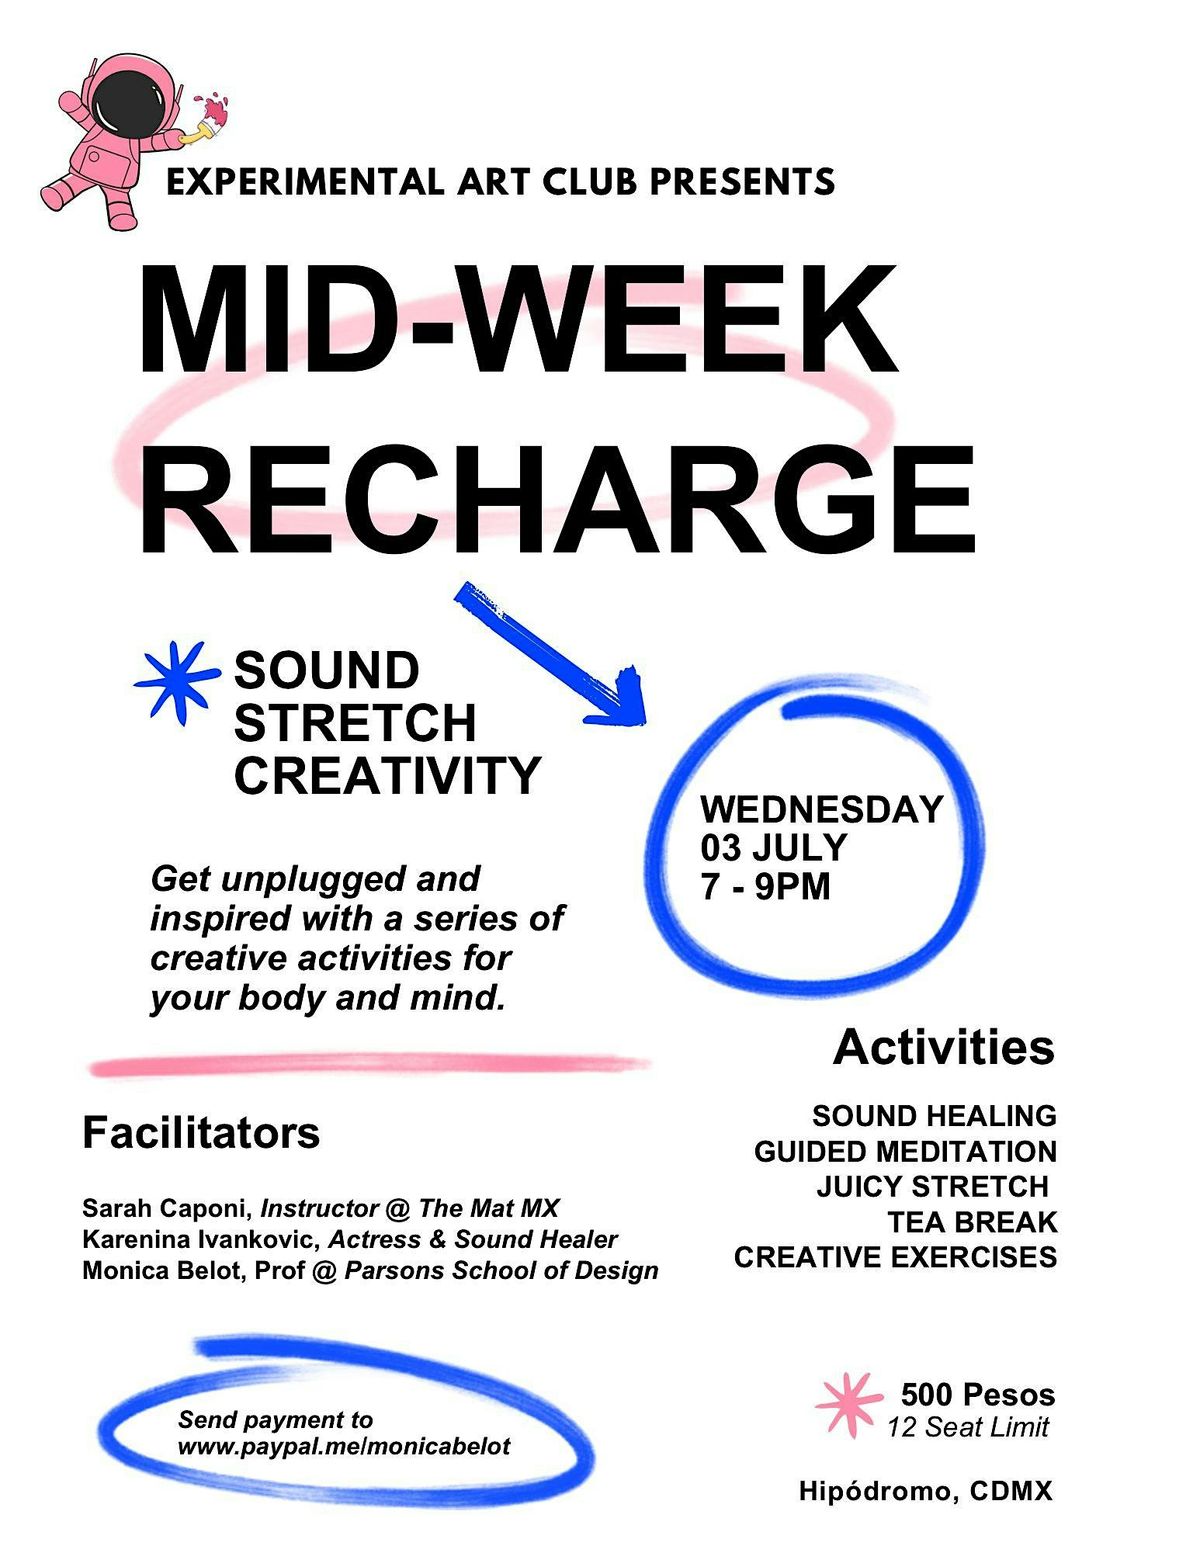 Mid-Week Recharge presented by Experimental Art Club